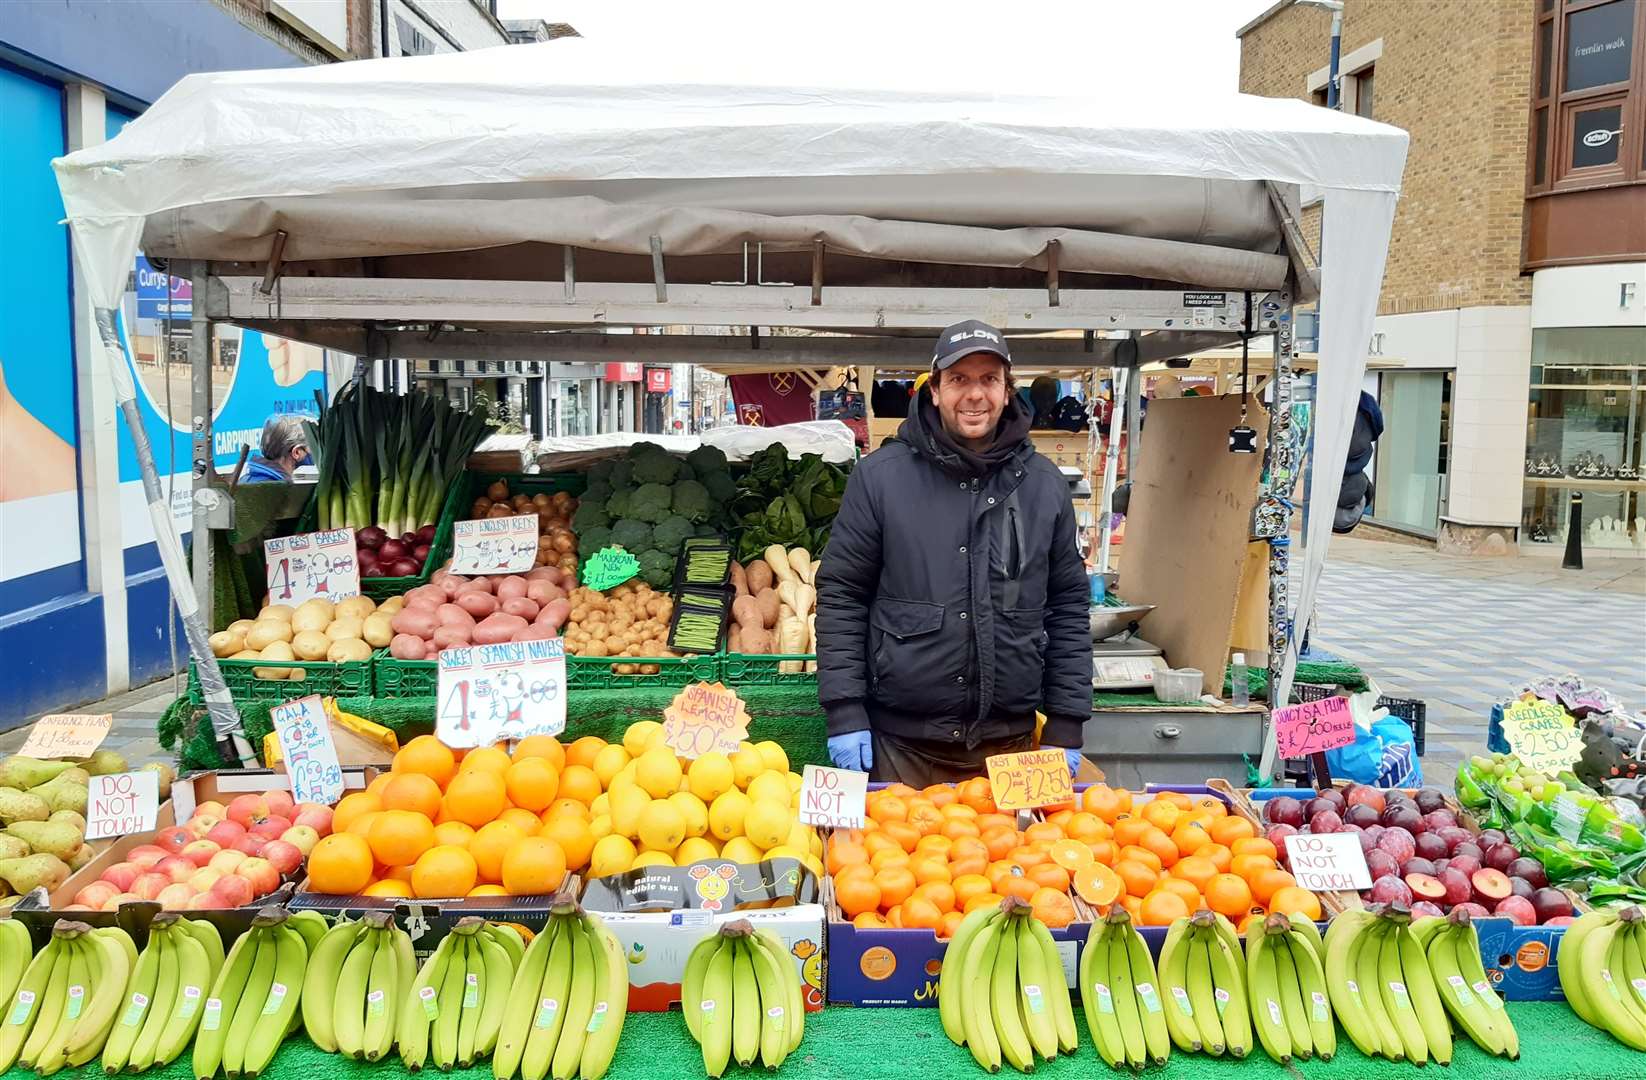 Kristian Van Haeften runs the fruit stall in Earl Street, Maidstone